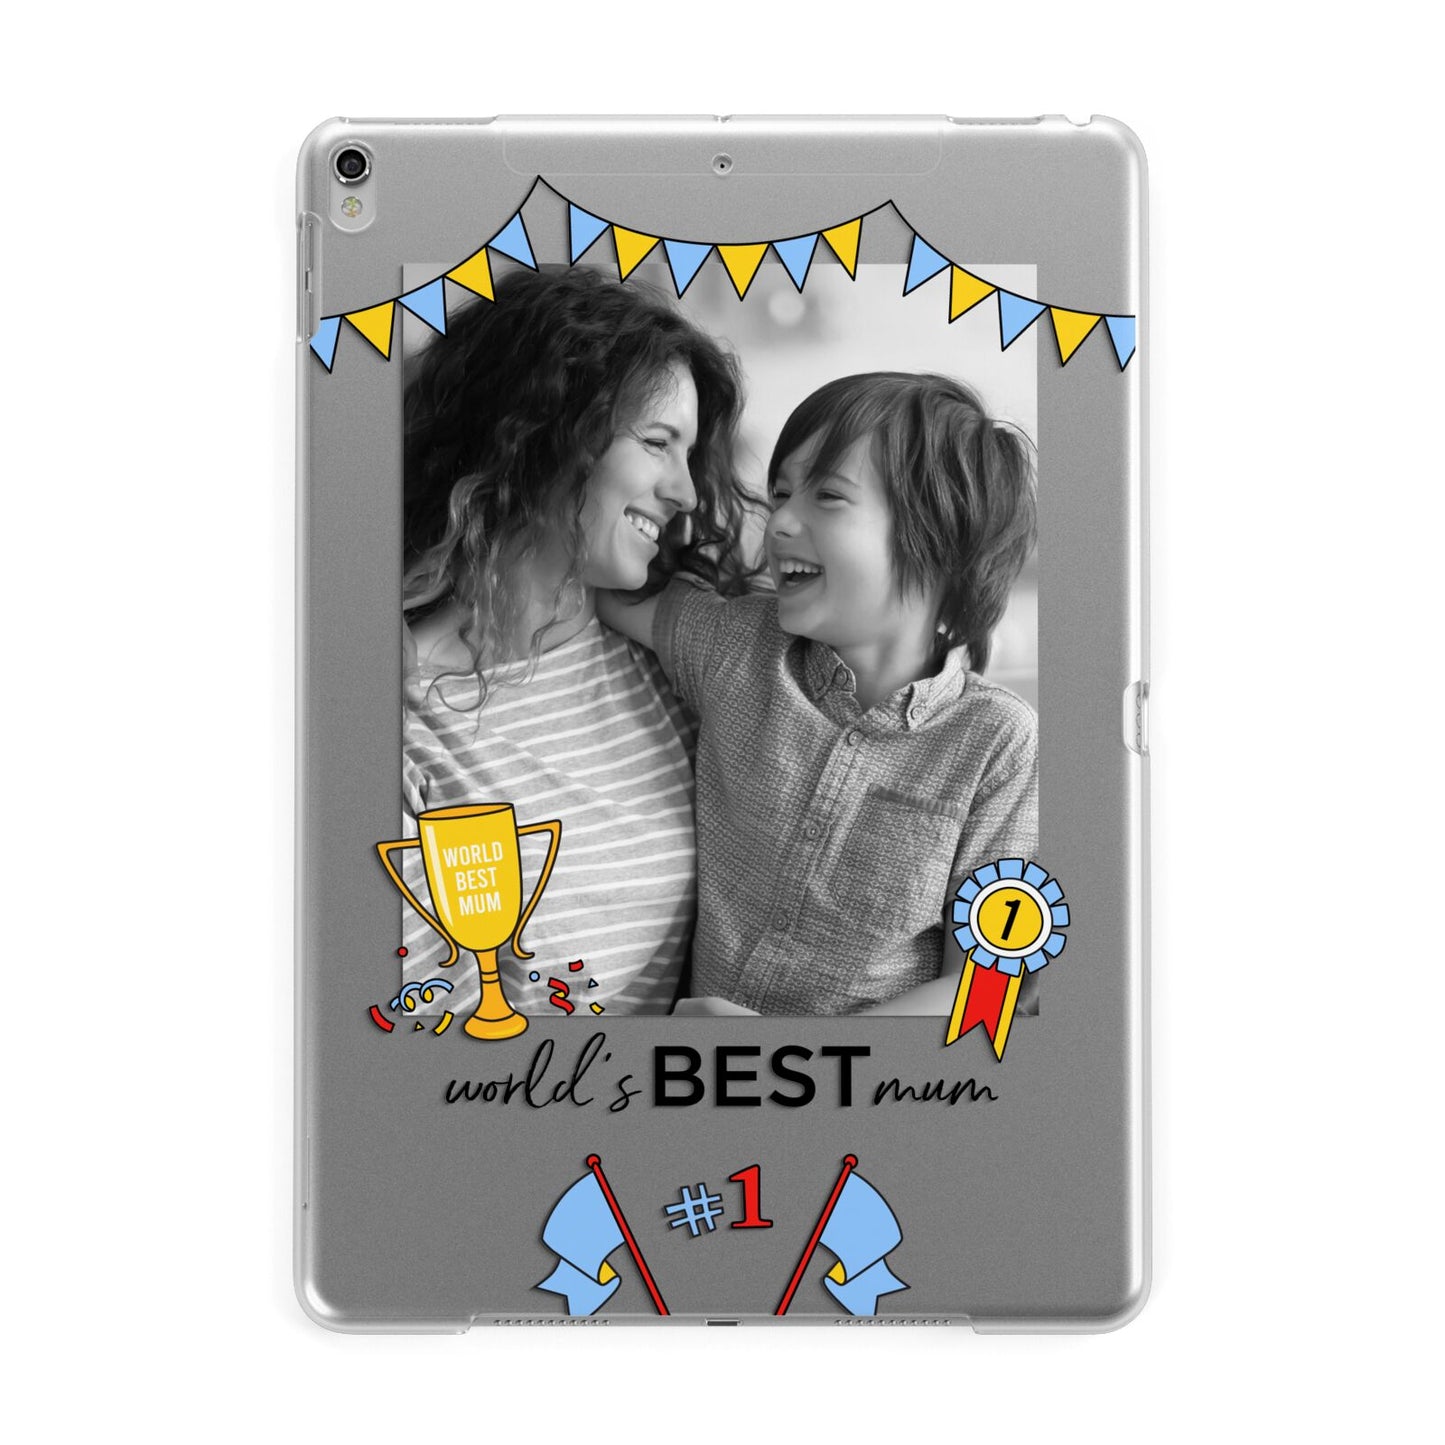 Worlds Best Mum Apple iPad Silver Case